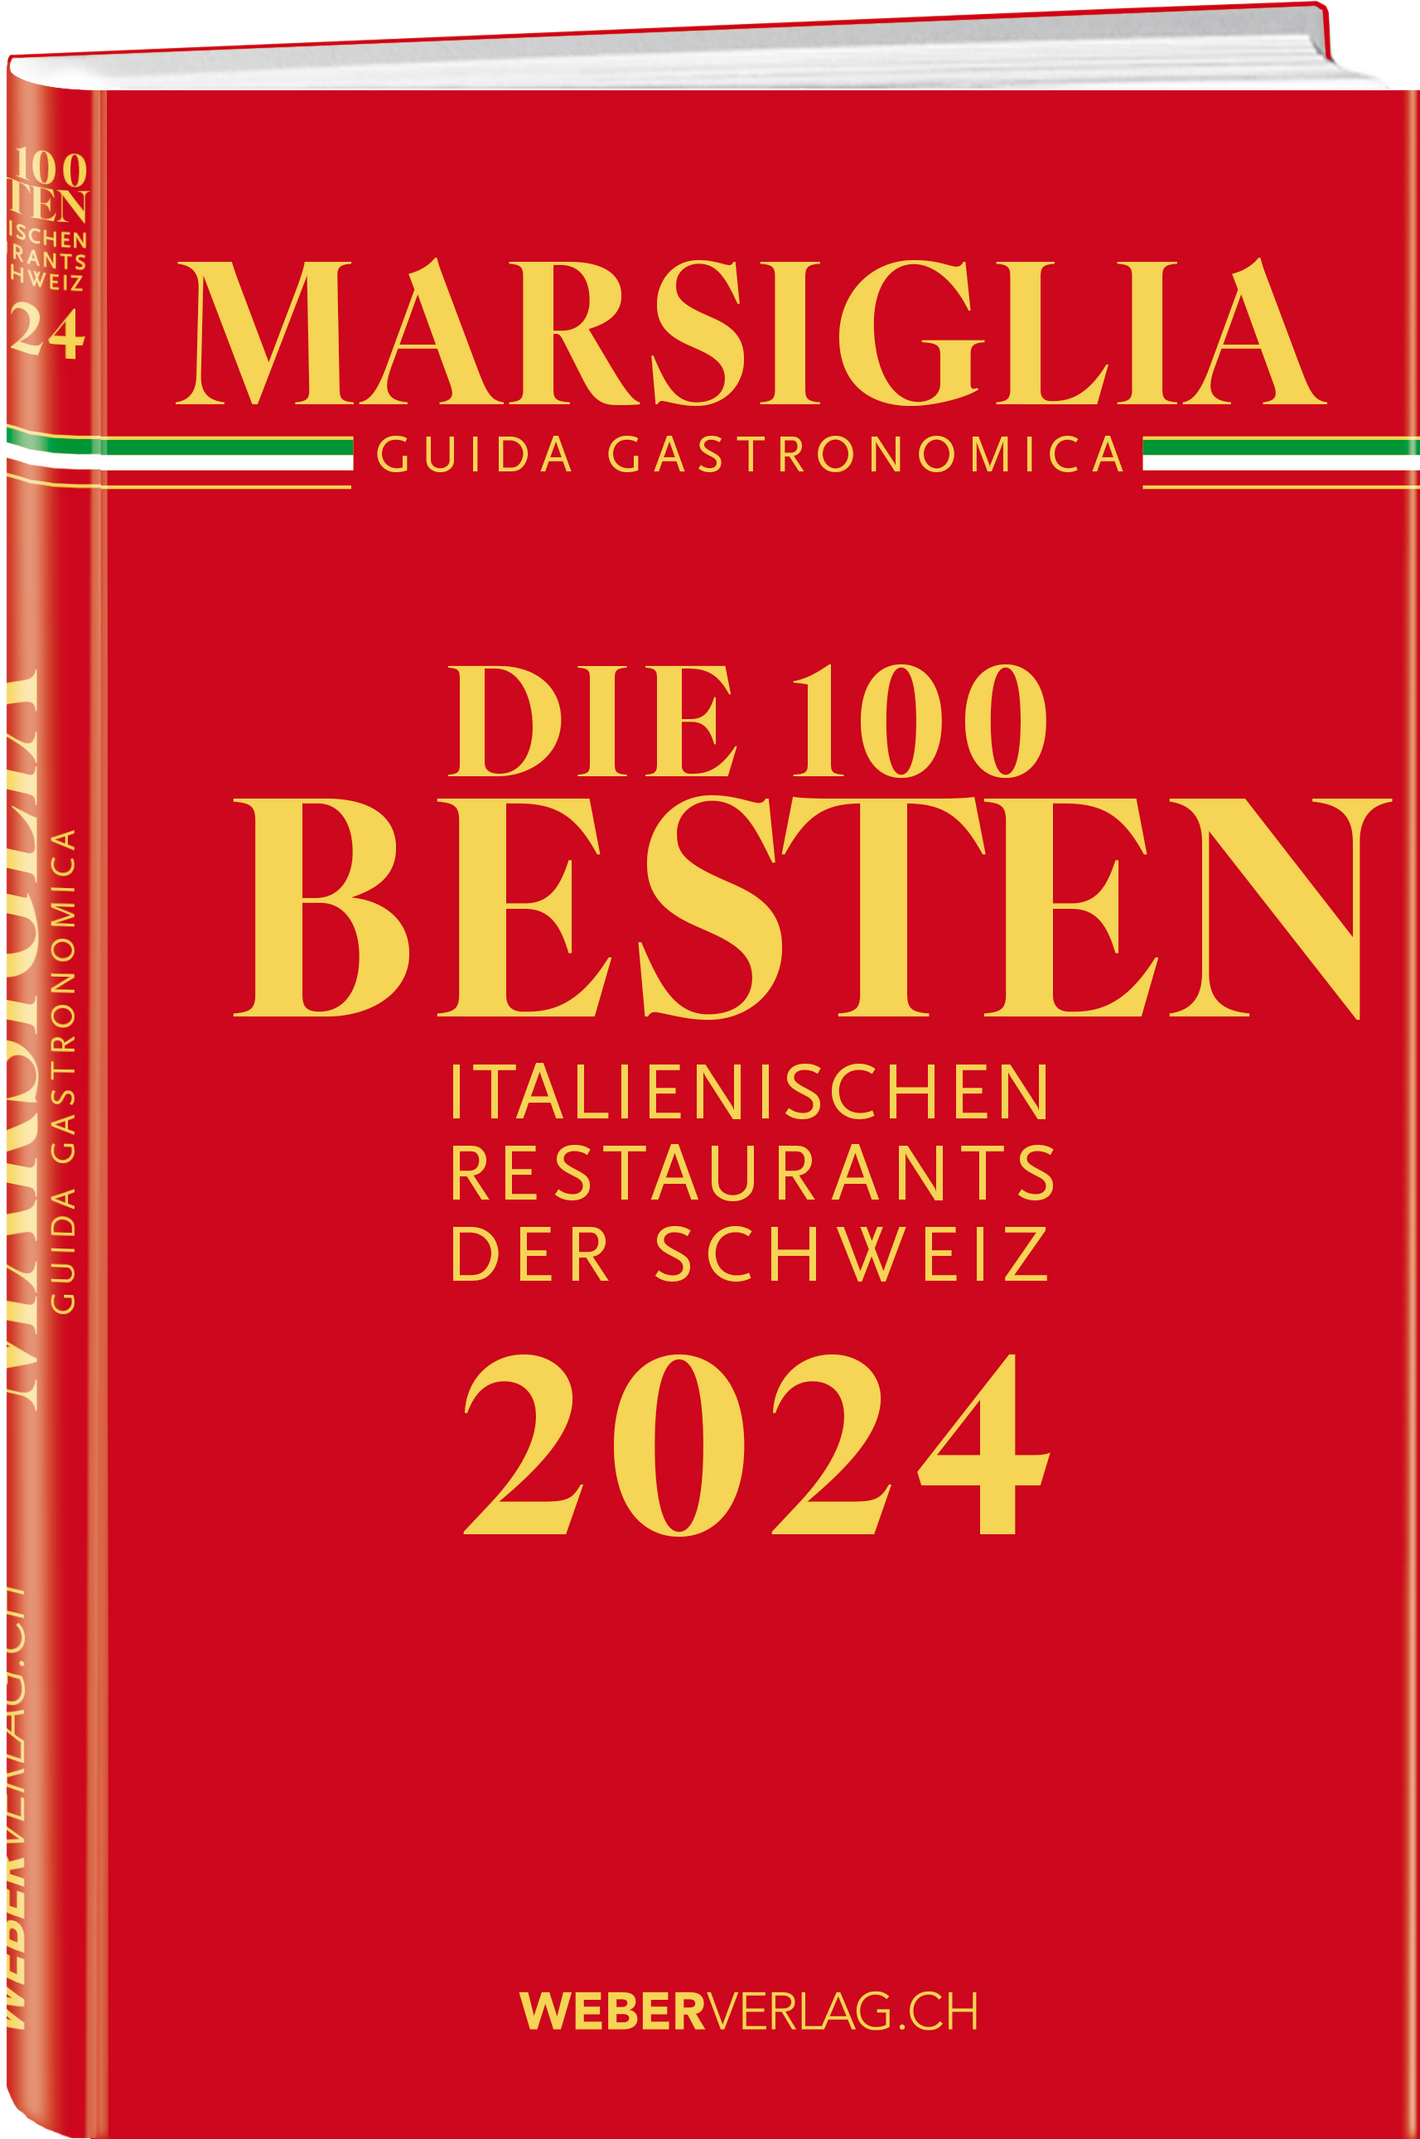 Michel Marsiglia | Die 100 besten italienischen Restaurants der Schweiz 2024 - • WEBER VERLAG